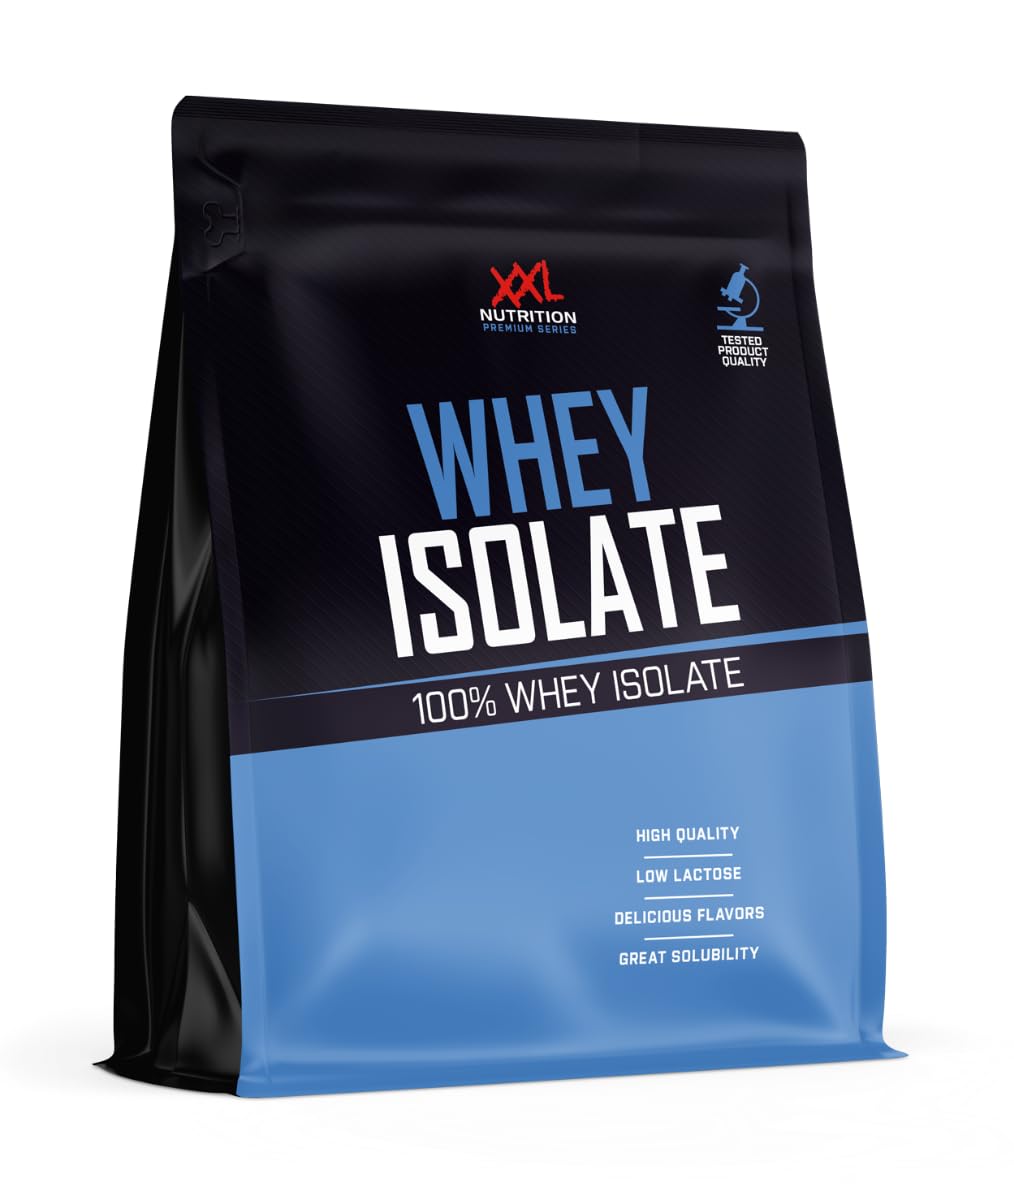 XXL Nutrition - Whey Isolate - Höchste Qualität Molkenprotein-Isolat, nur 0,8% Laktose - Eiweiss Pulver Isolat - 2500 Gramm - Himbeere